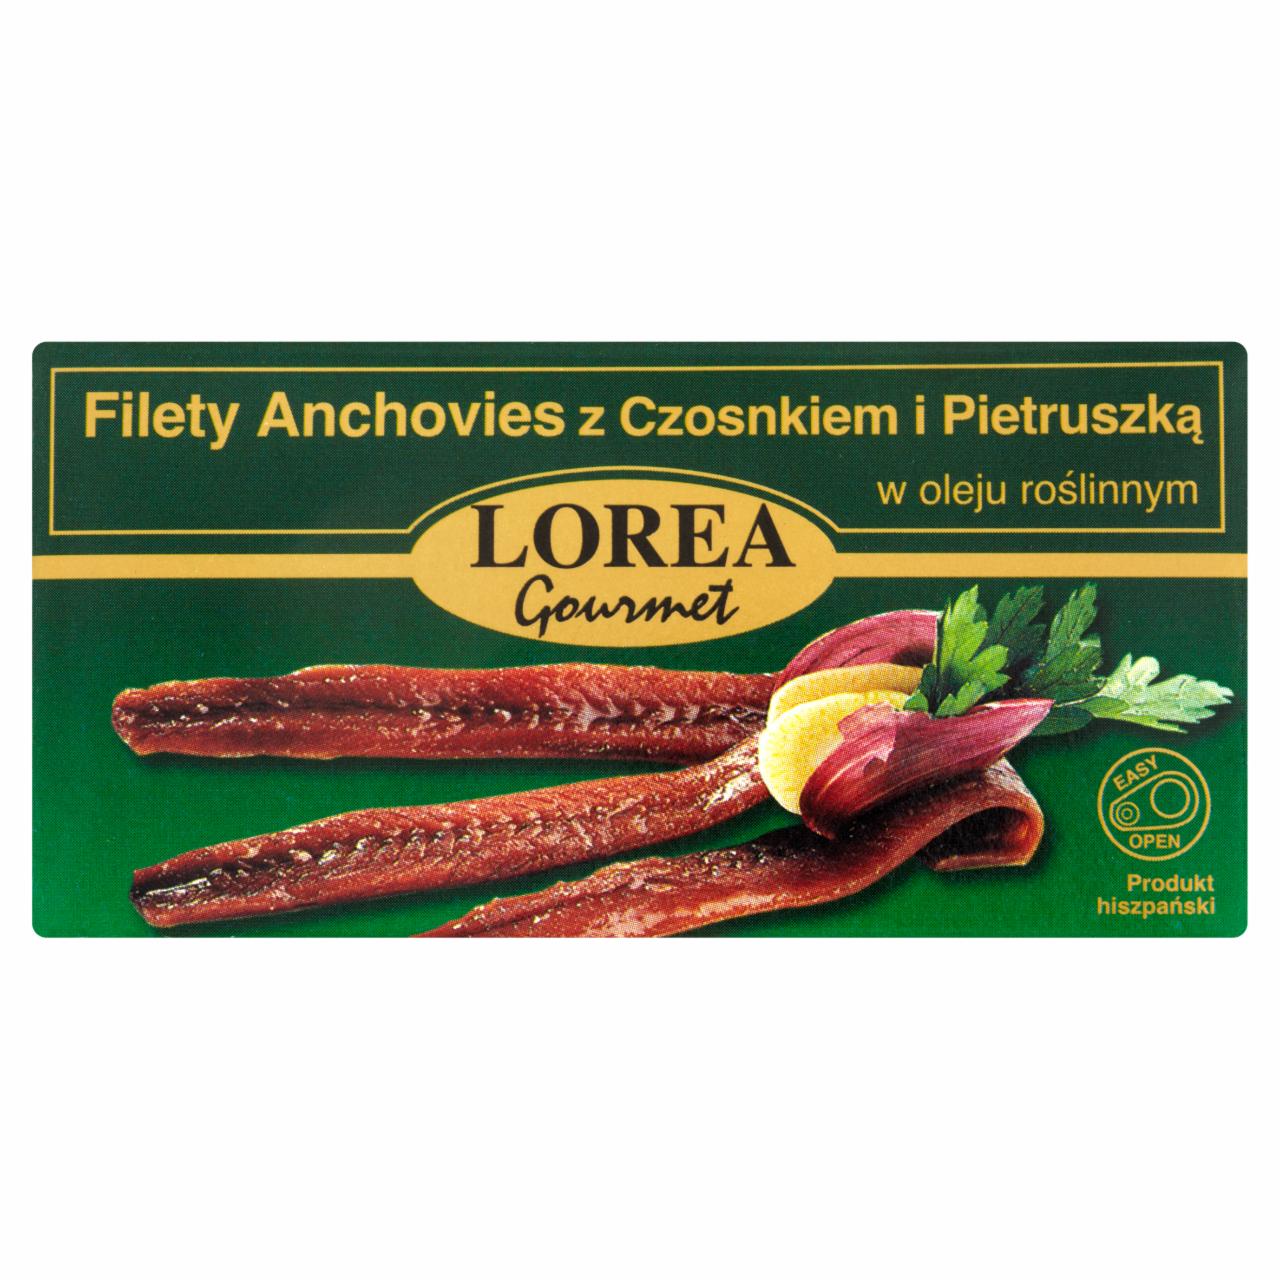 Zdjęcia - Lorea Gourmet Filety anchovies z czosnkiem i pietruszką w oleju roślinnym 50 g